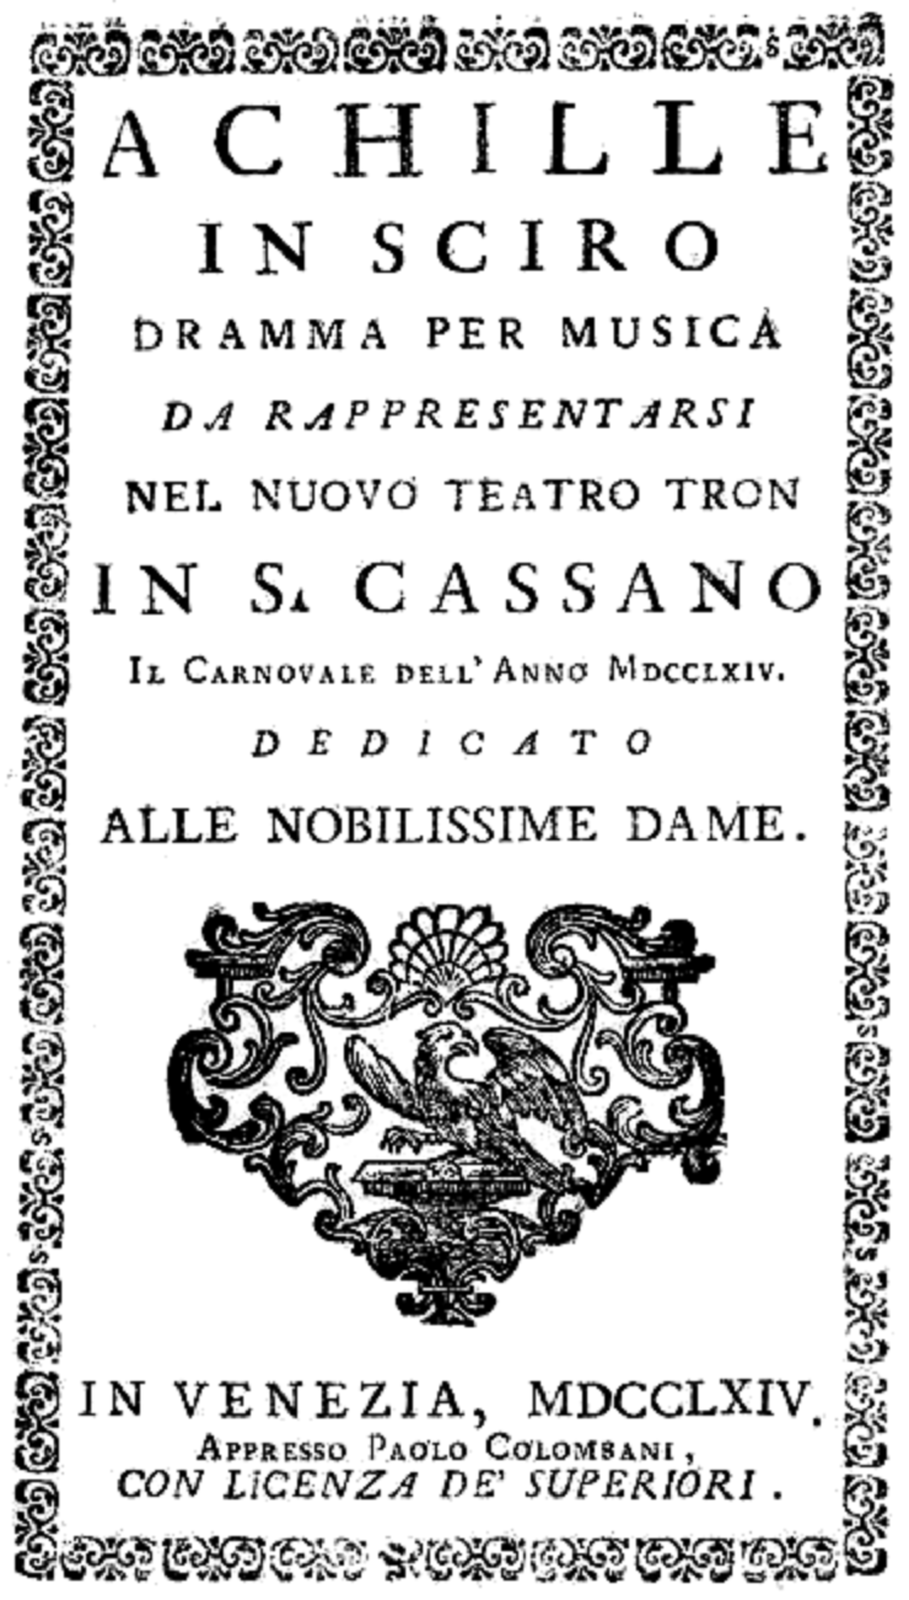 Zdjęcie przedstawia afisz sztuki Achille in Sciro, który został napisany w języku włoskim. Na około afiszu znajduje się ozdobny kwiatowy motyw. Ilustracja jest biało-czarna.